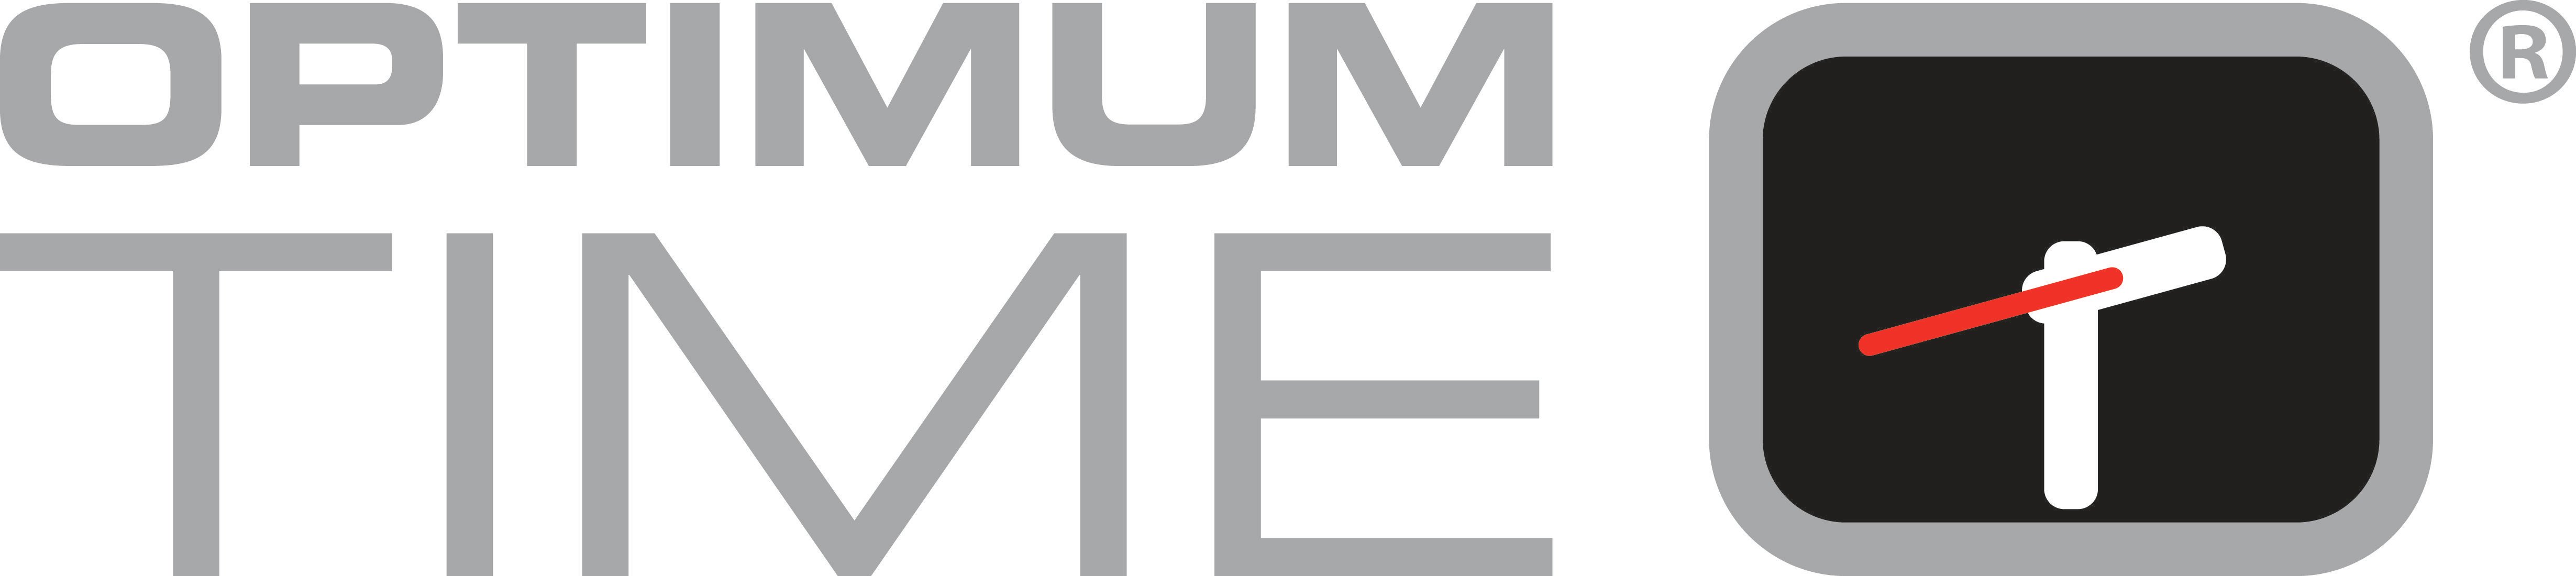 Google Time Logo - Optimum Time